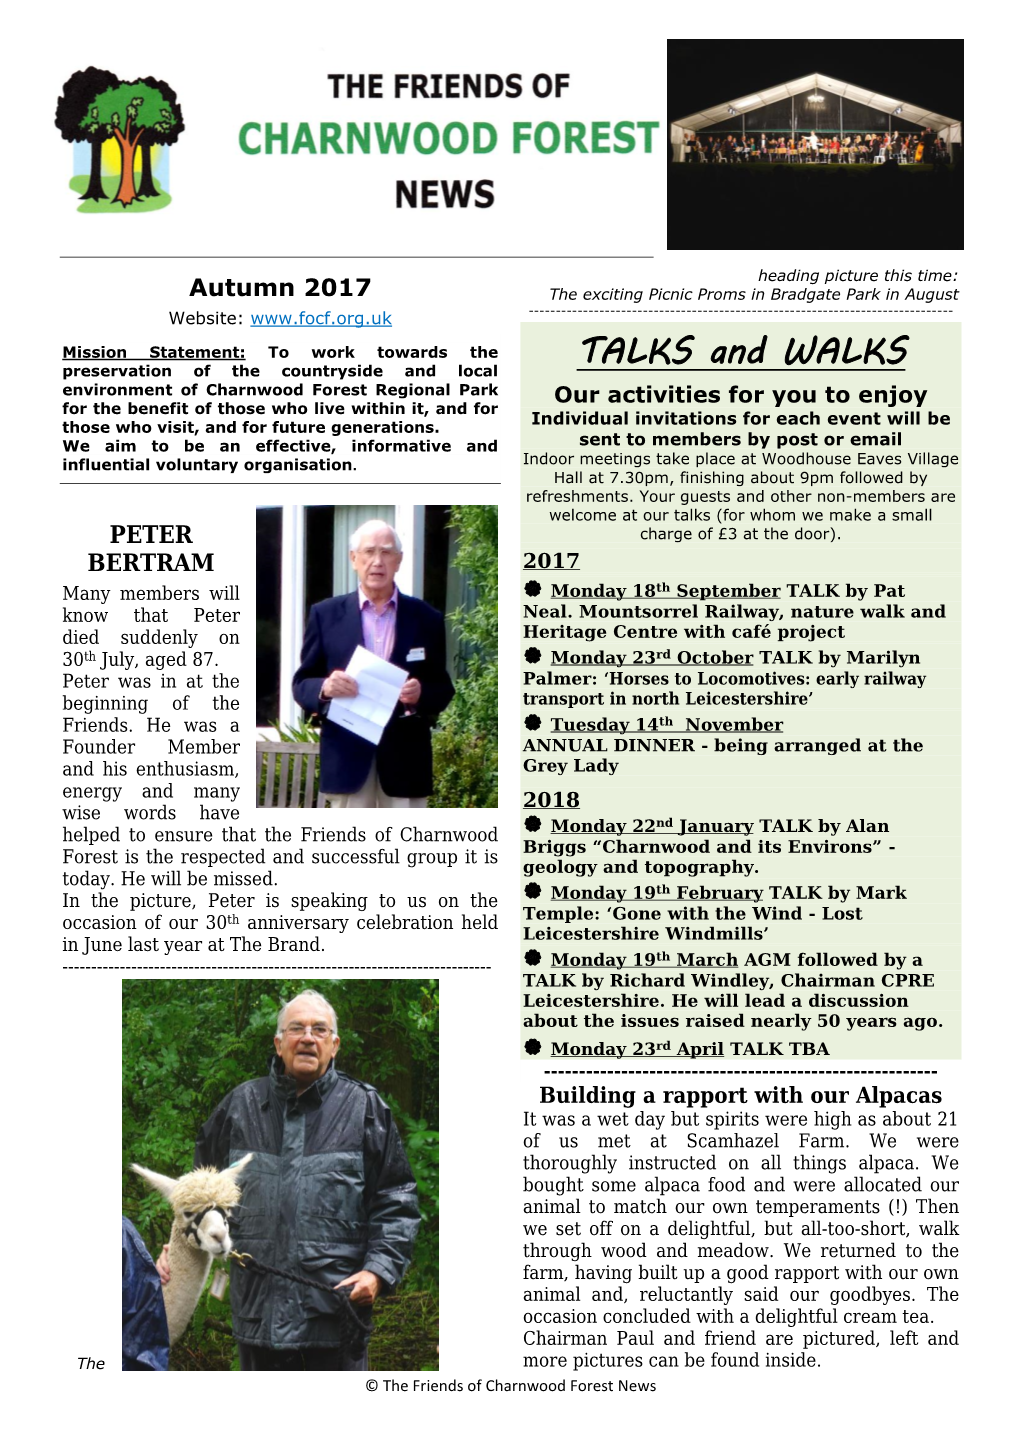 Autumn 2017 Newsletter